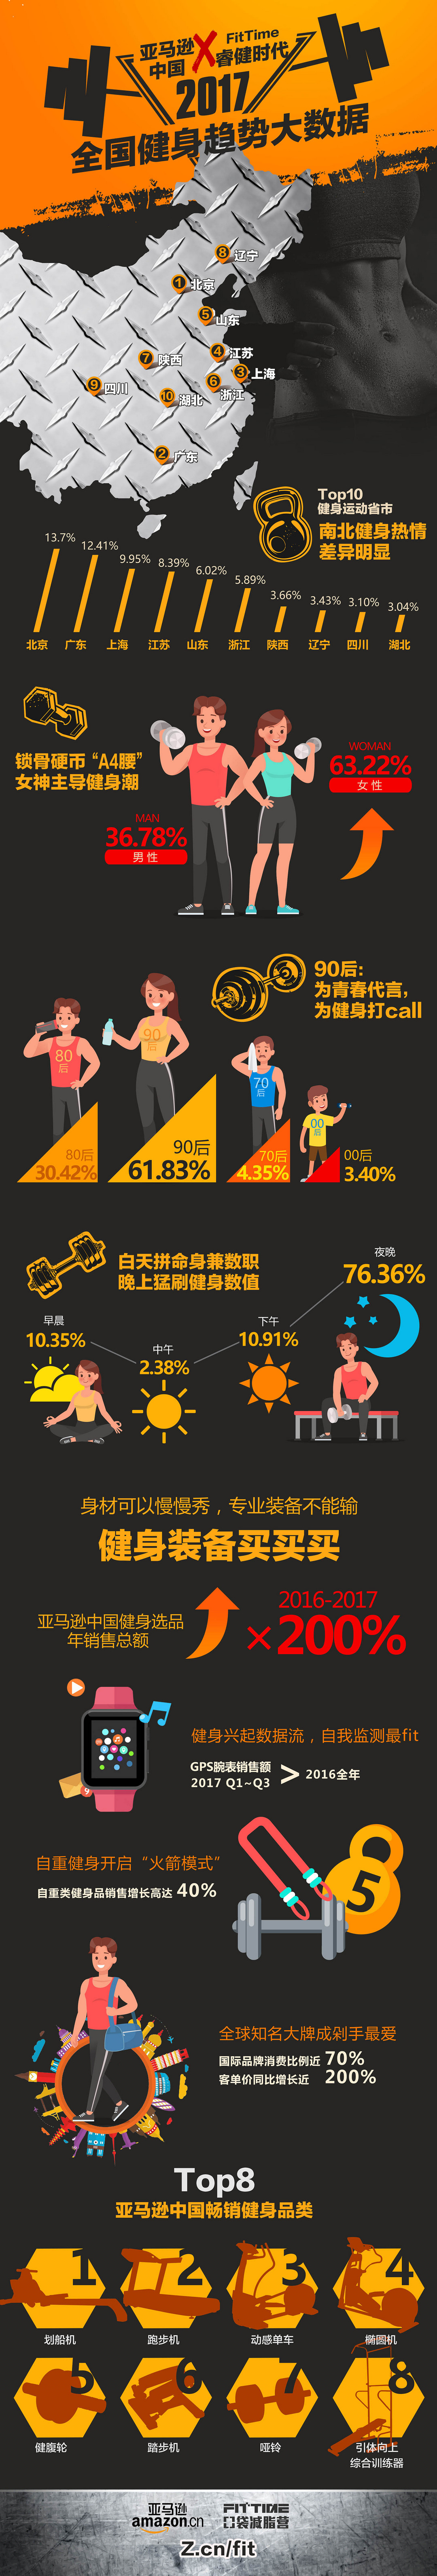 晚间健身成常态：Amazon 亚马逊中国 联合 FitTime 睿健时代 发布 《2017年全国健身趋势大数据》